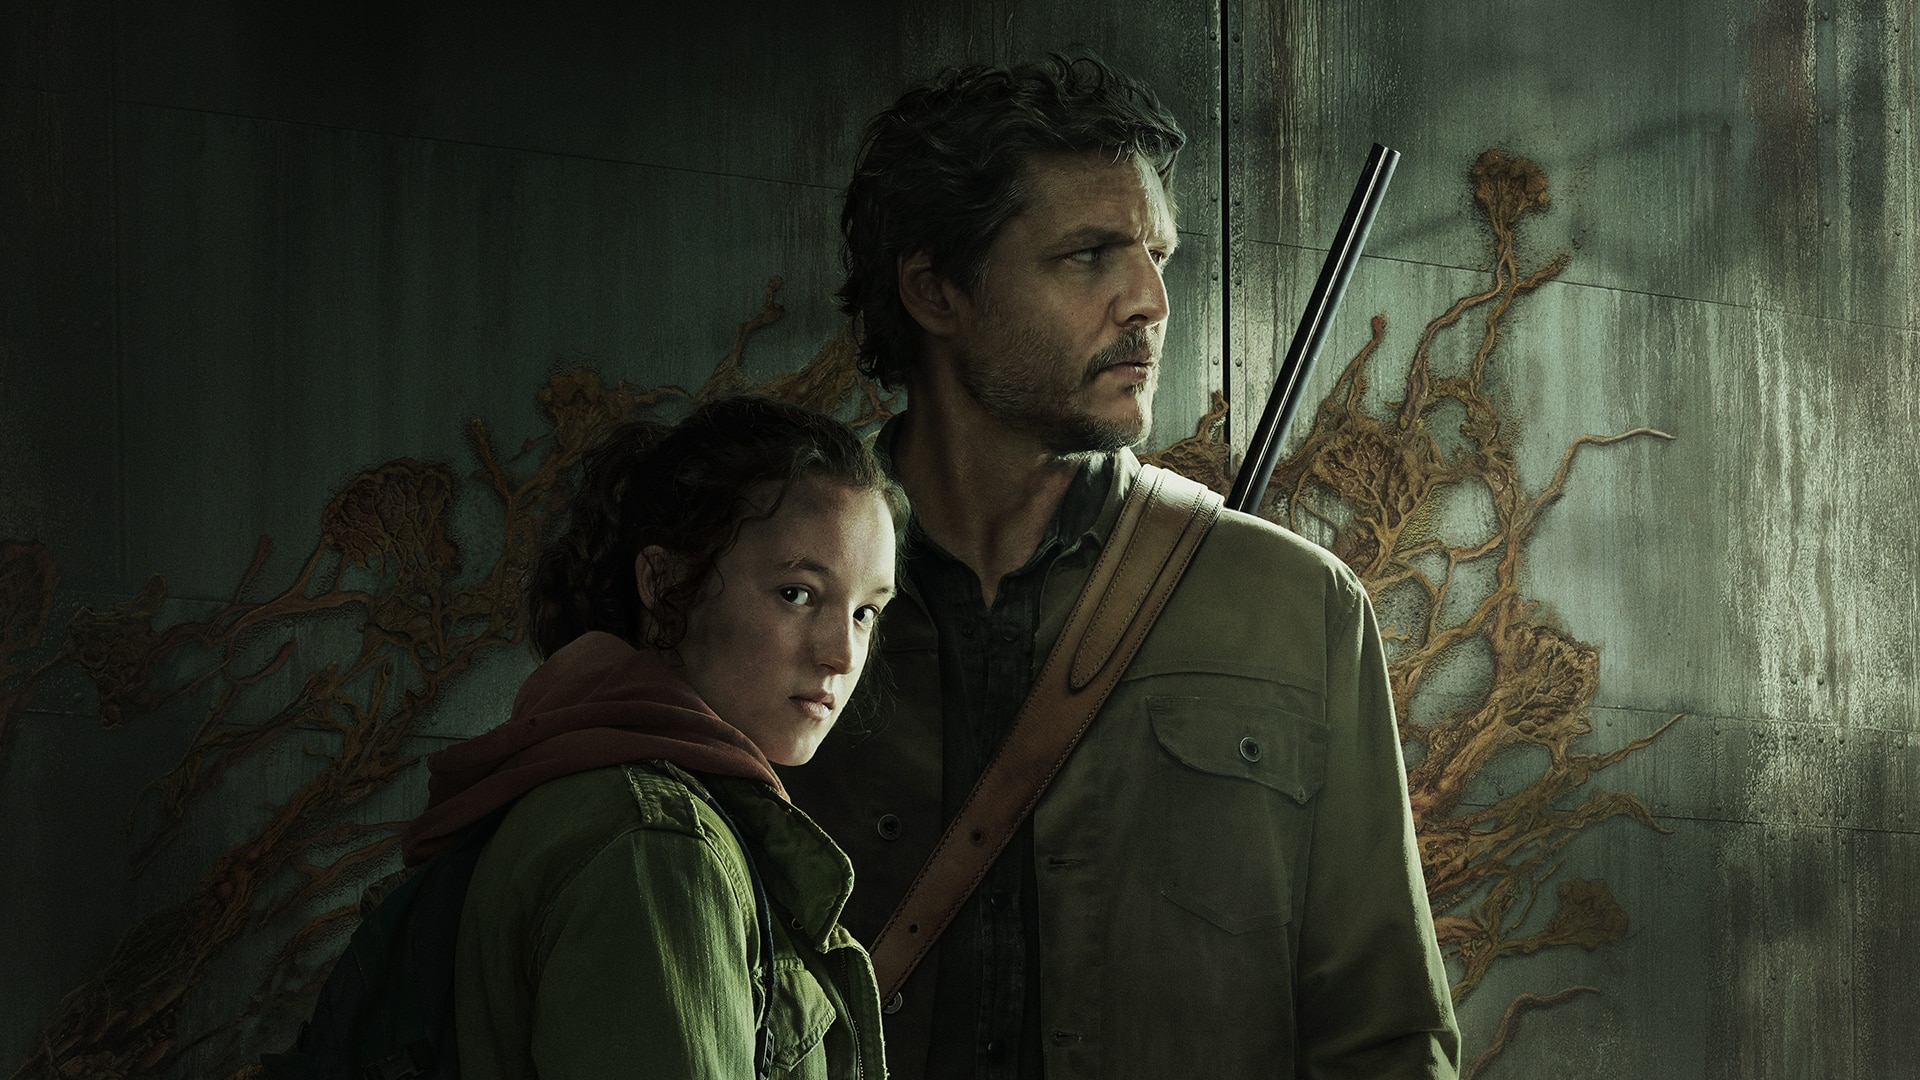 Es ist offiziell: Craig Mazin hat angekündigt, dass die Produktion der zweiten Staffel von "The Last of Us" bald beginnen wird